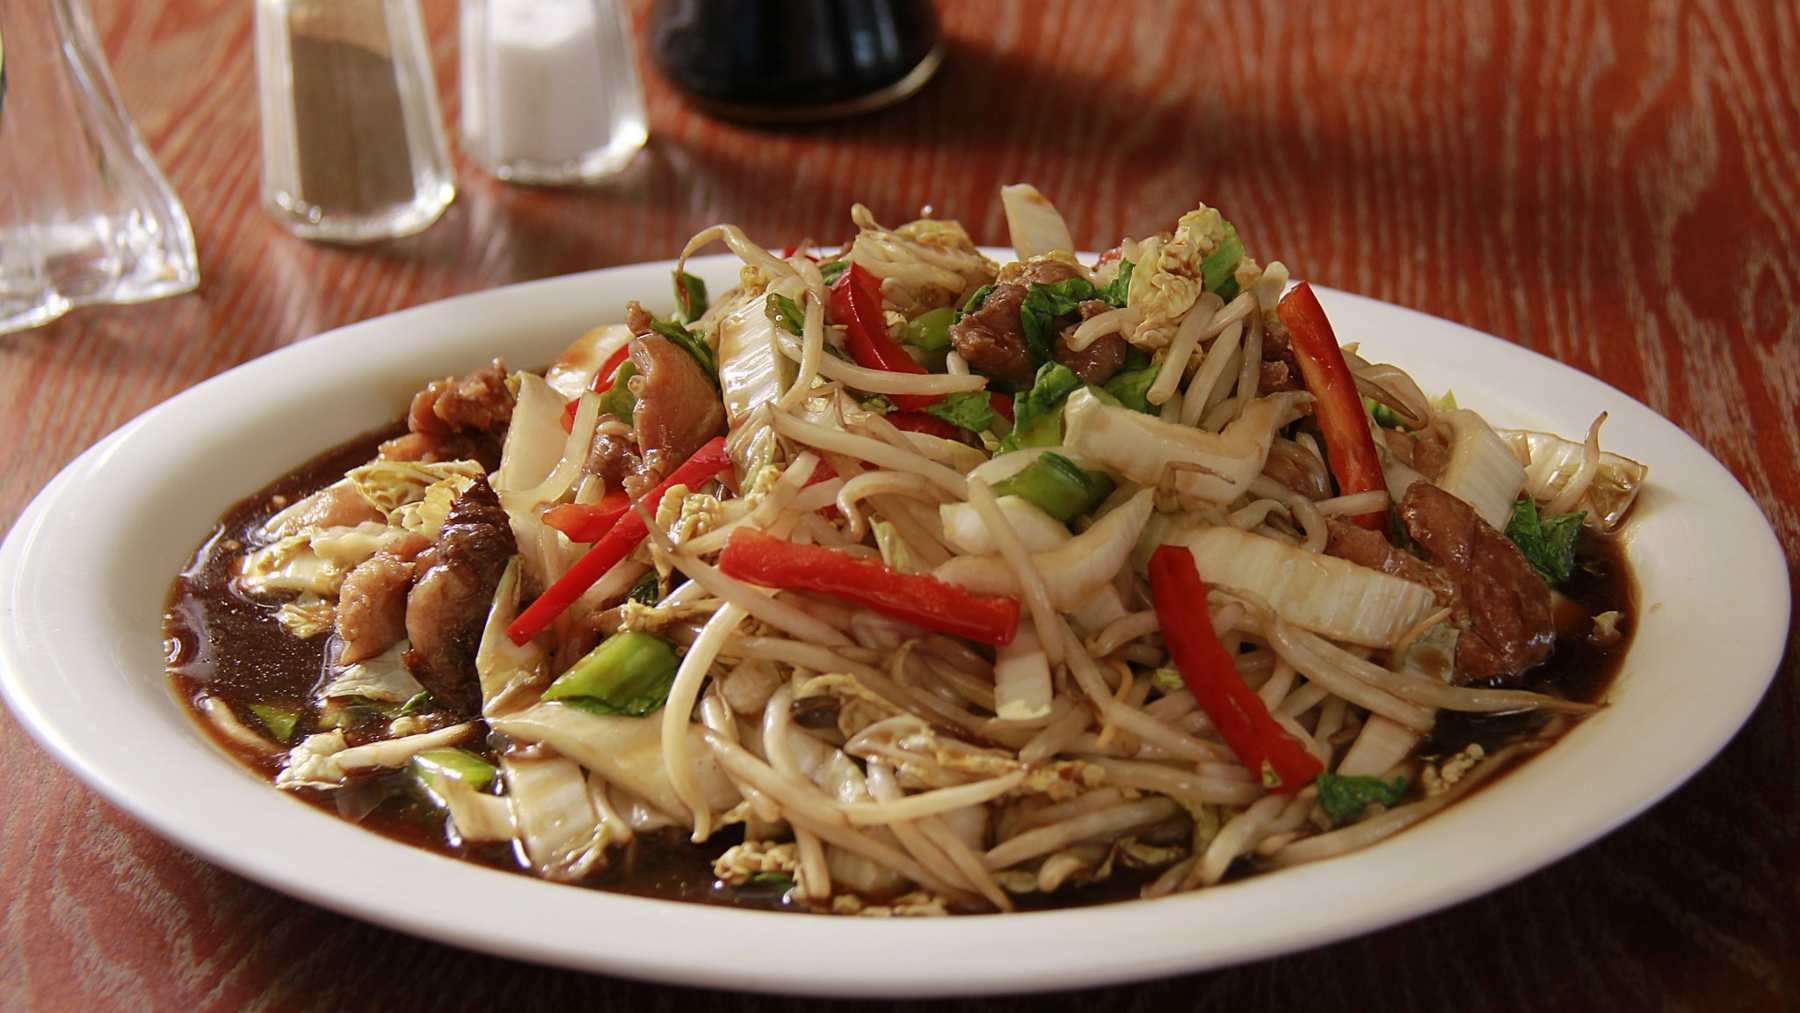 Comida china: Receta para preparar un delicioso y original chop